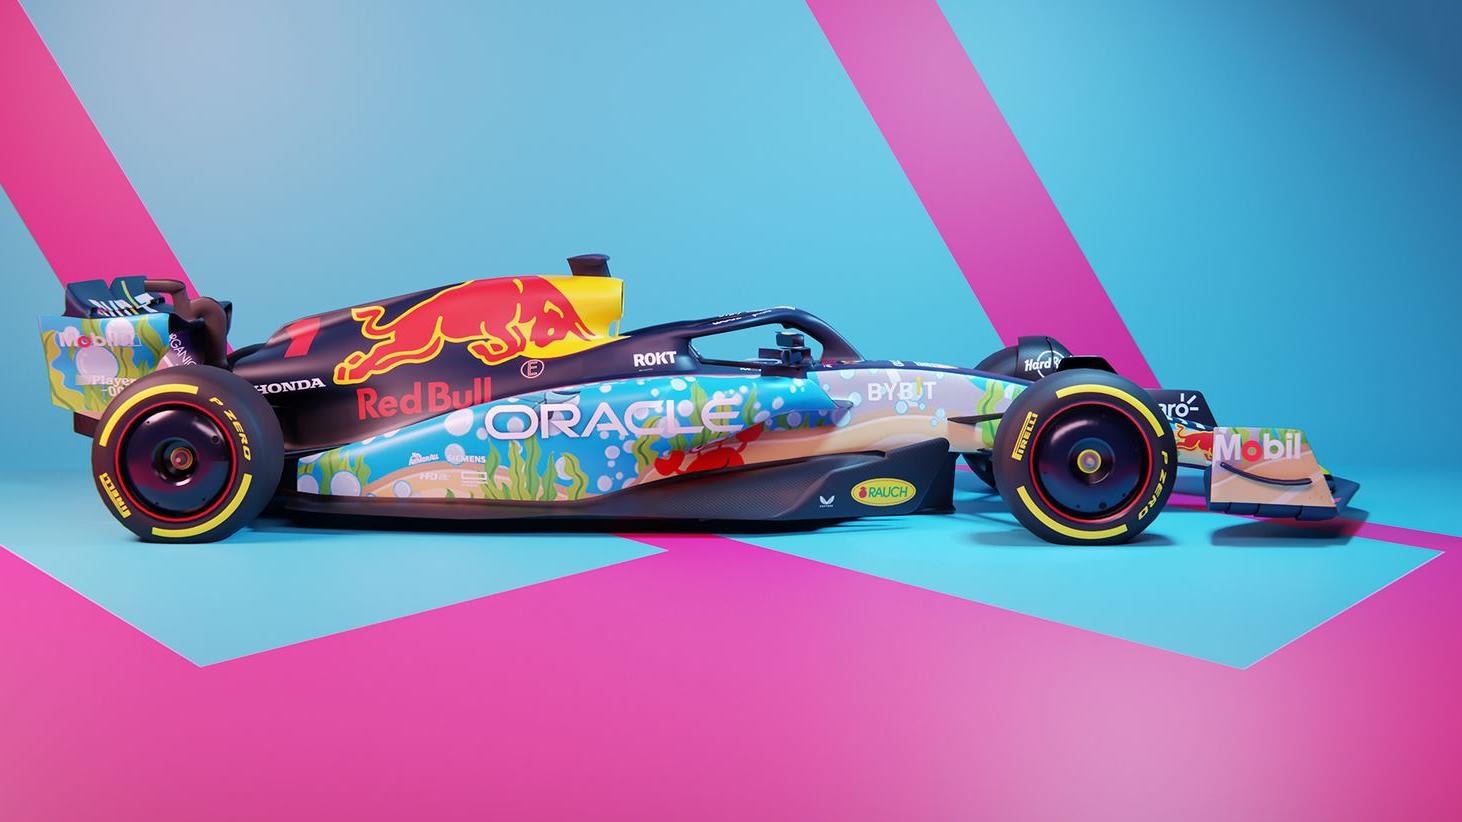 Formel 1-Team Red Bull fährt in Miami mit einem von Fans gestalteten Wagen